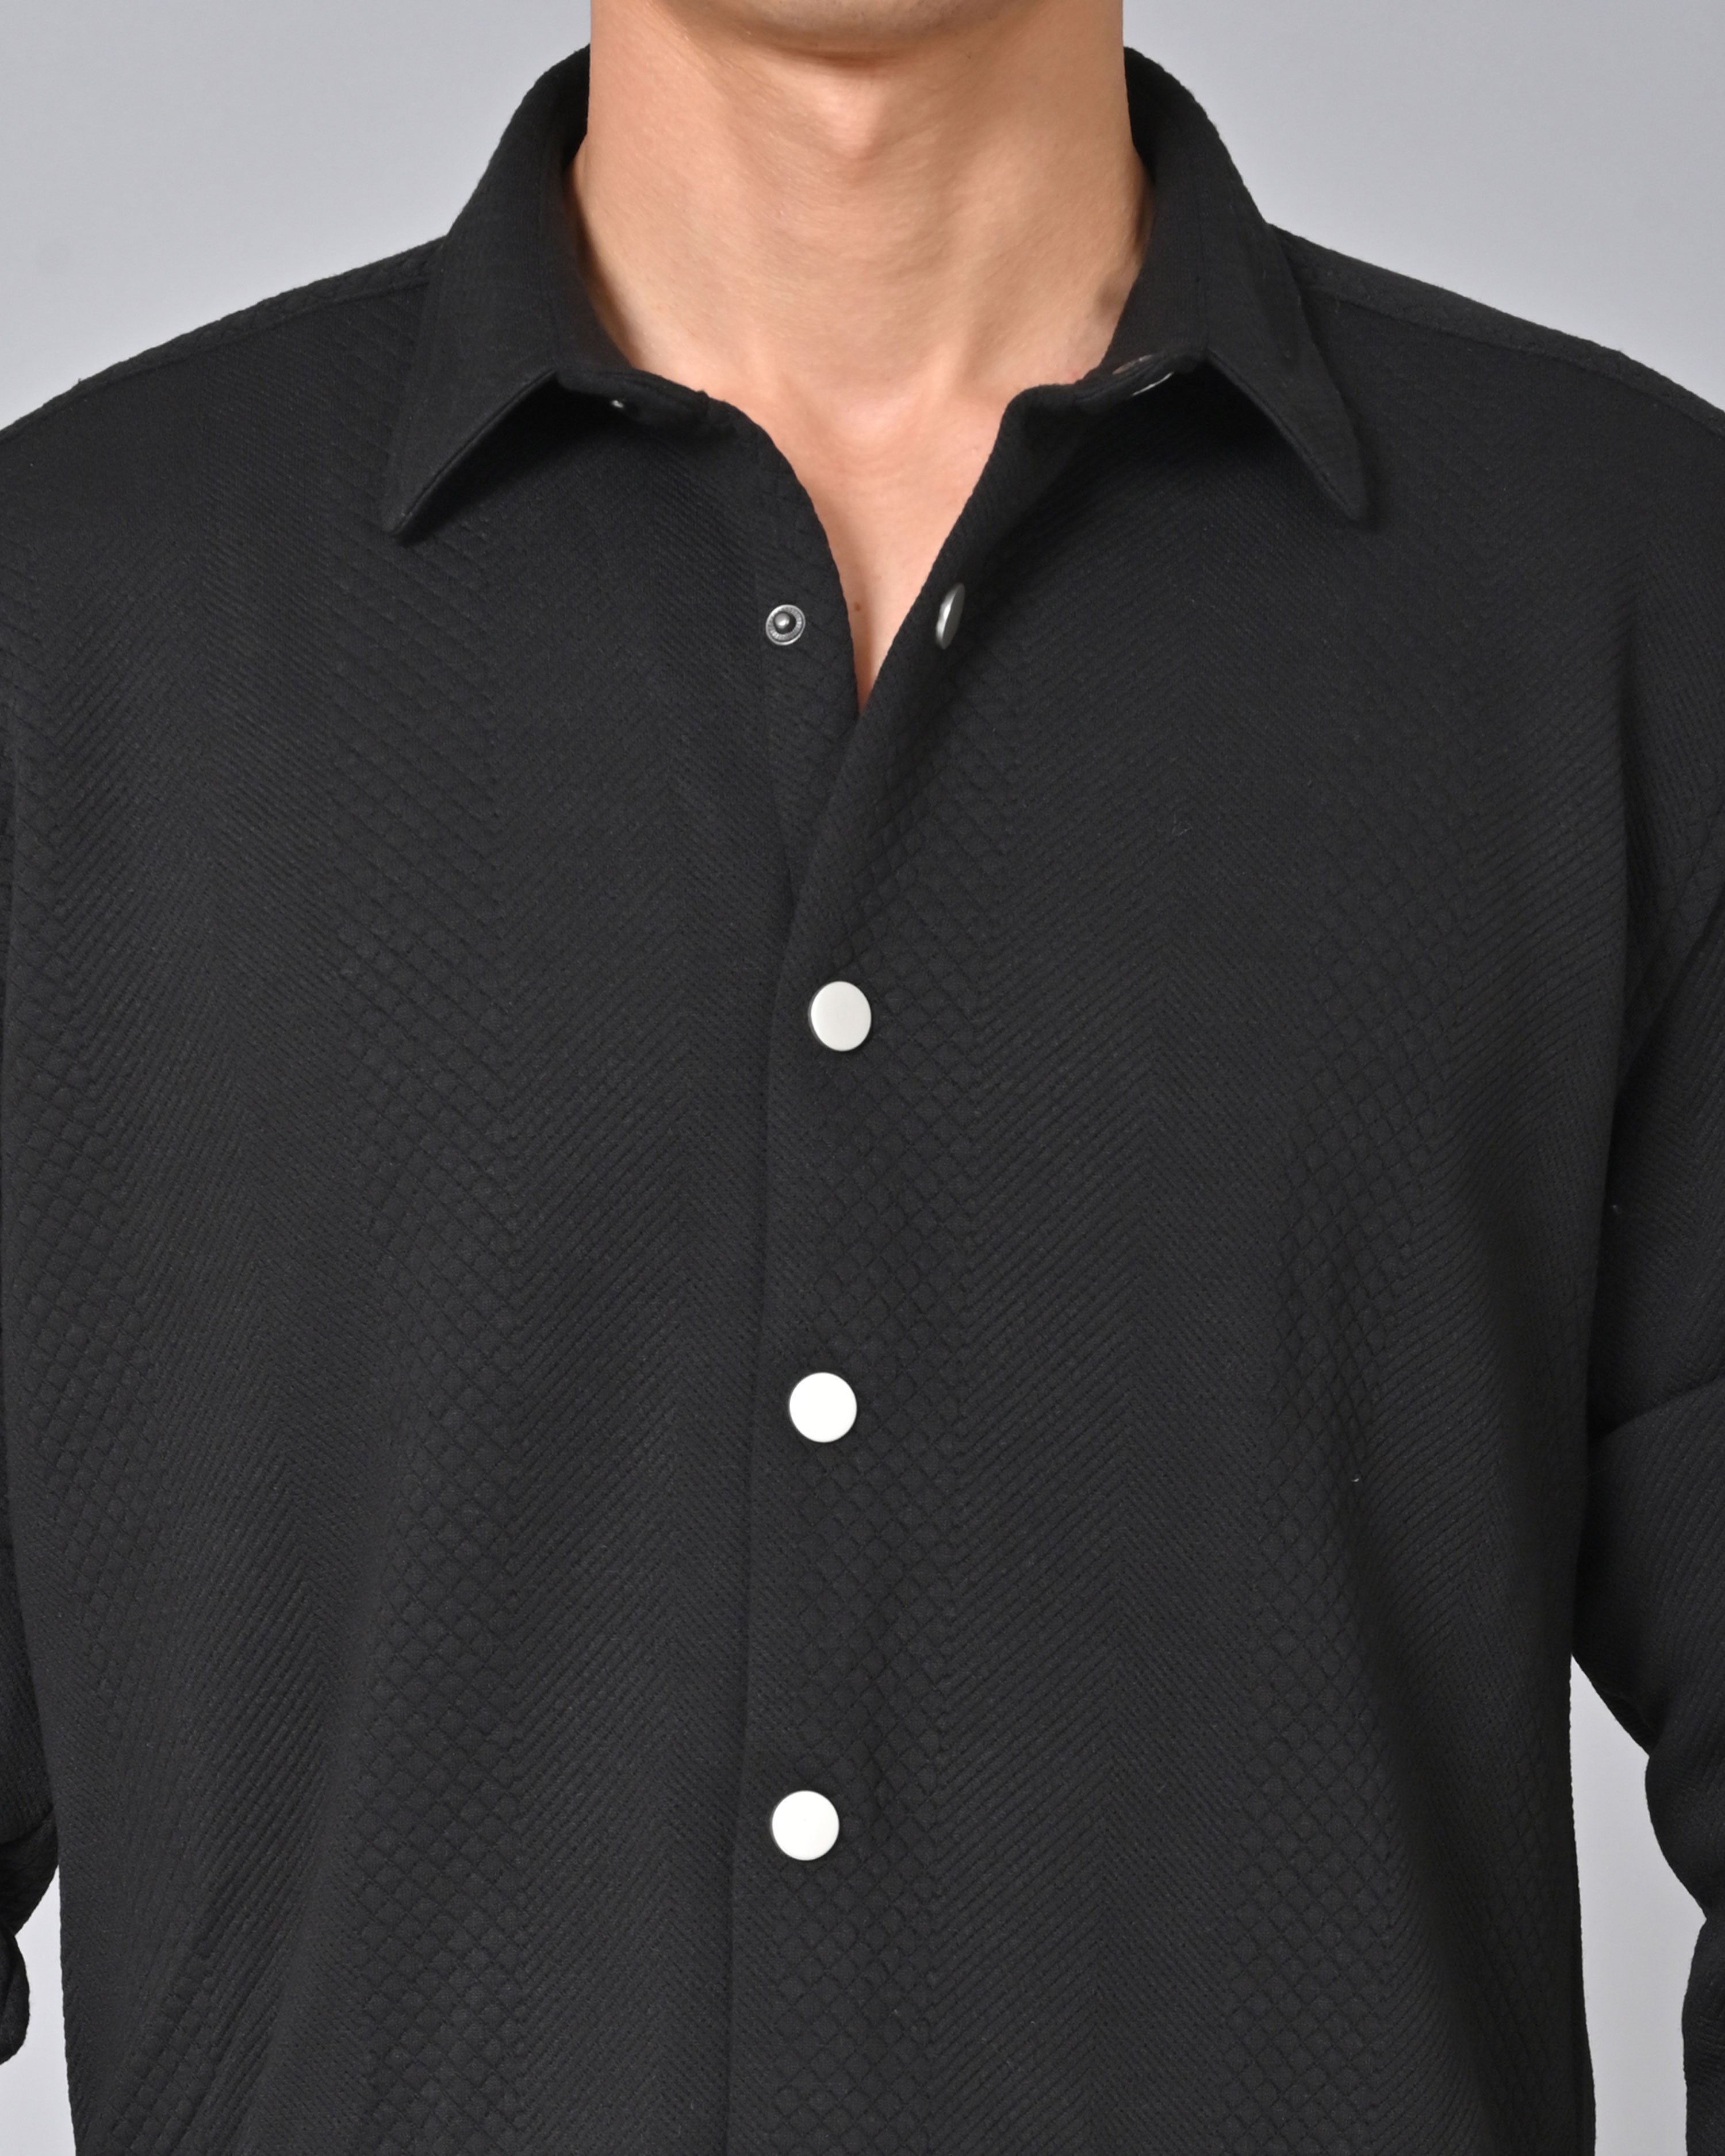 Buy Men's Black Knit Cotton Shirt Online